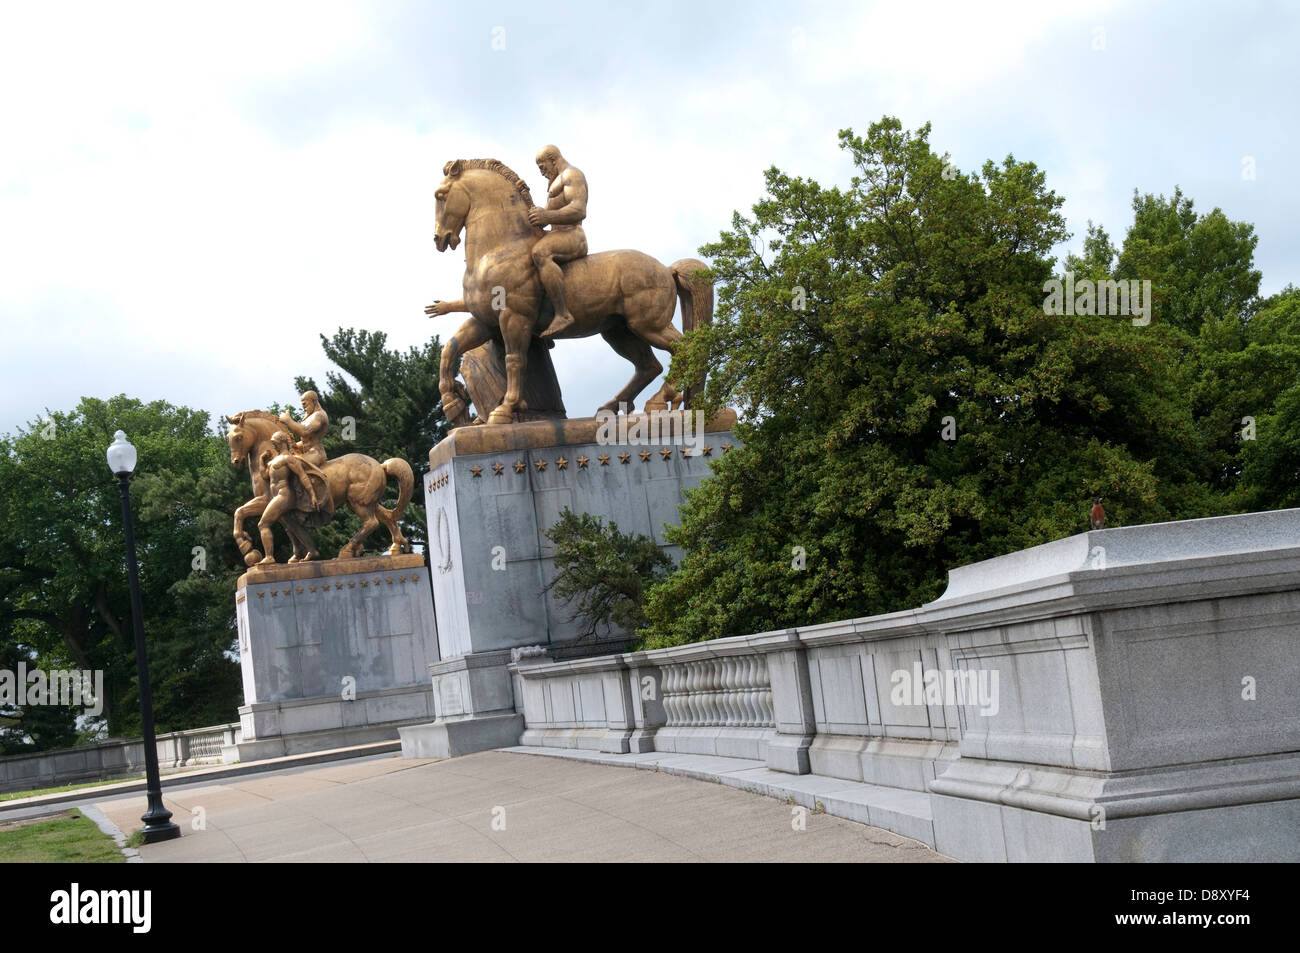 Sculptures on the Arlington Memorial Bridge in Washington DC, USA Stock Photo